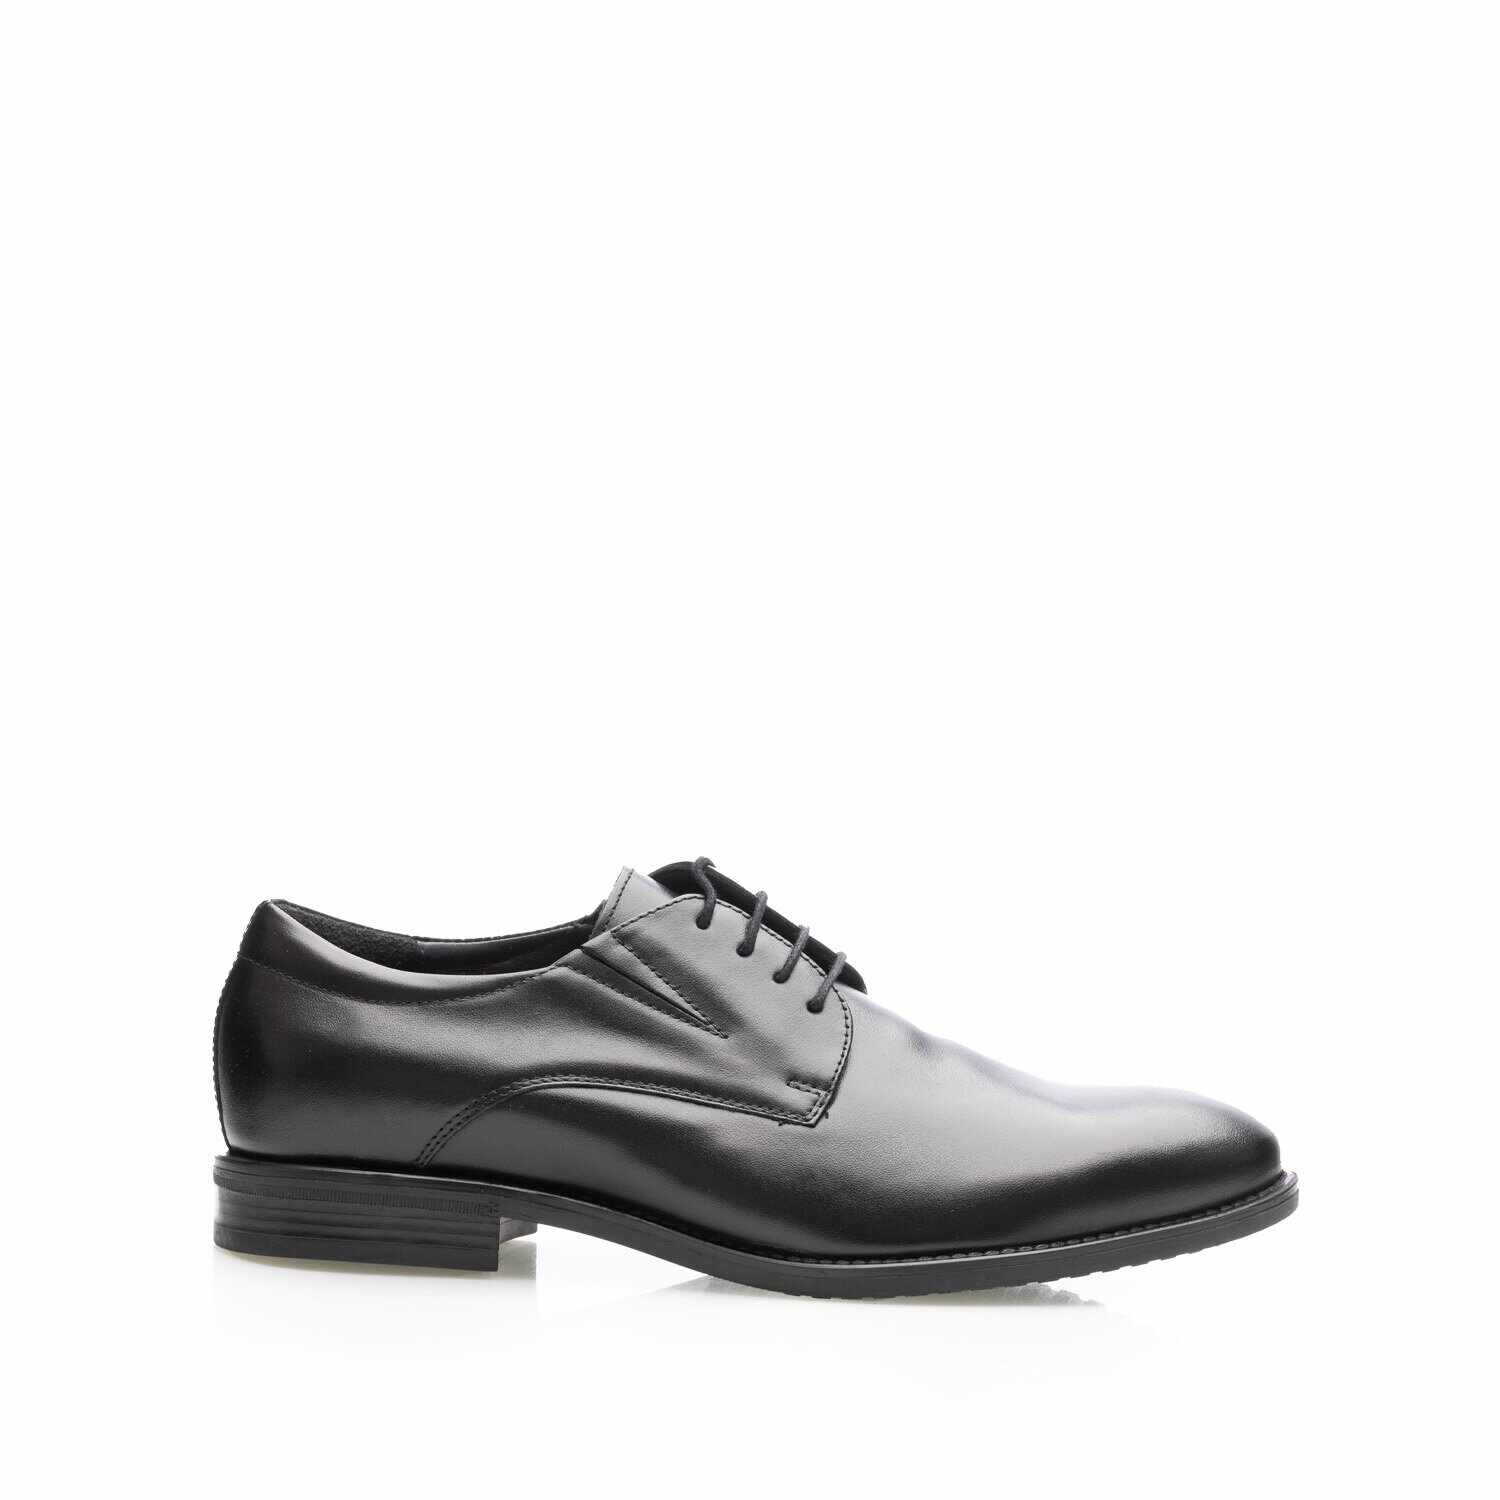 Pantofi eleganţi bărbaţi din piele naturală, Leofex - 999 Negru Box